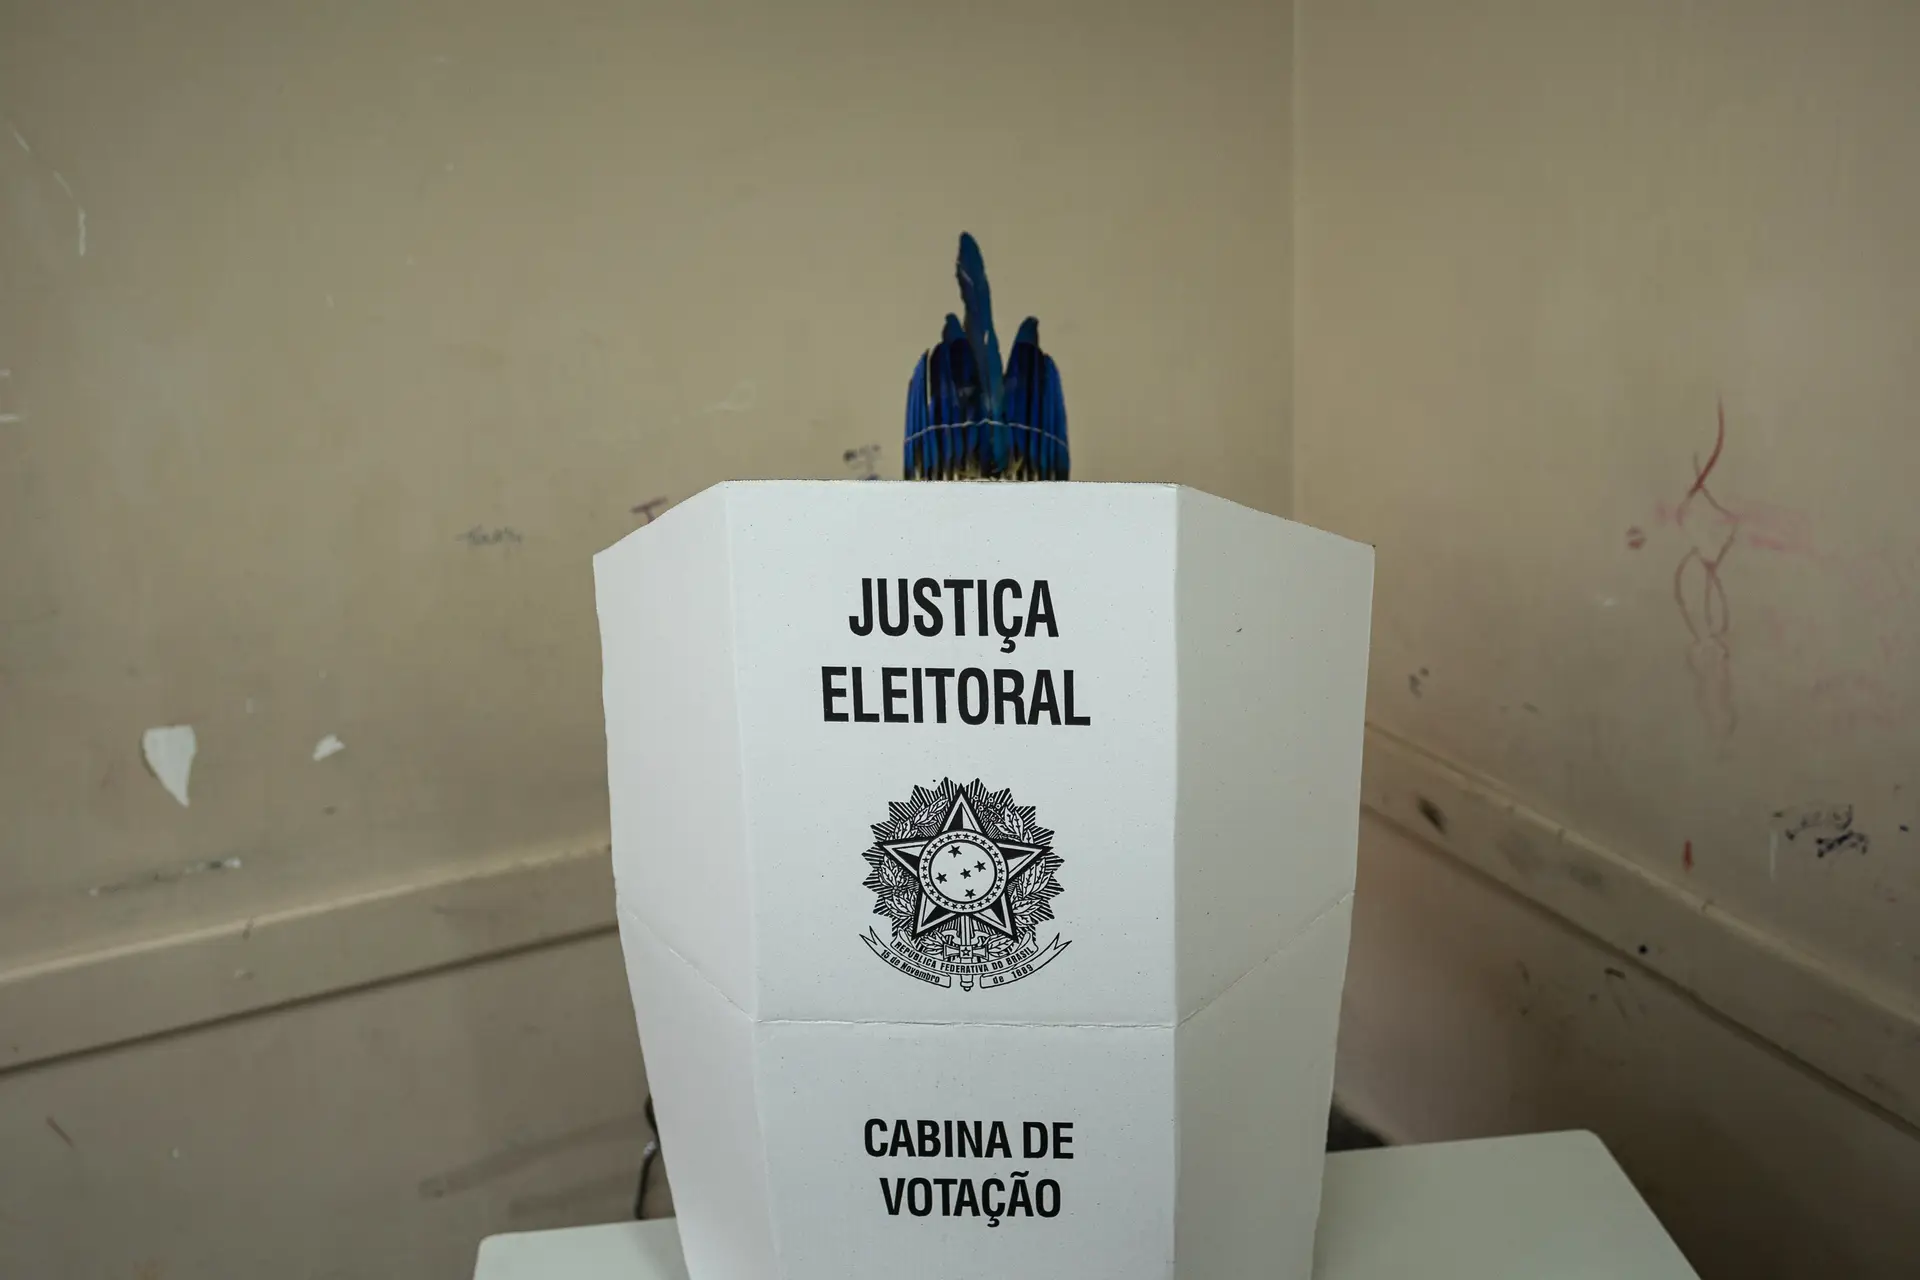 Observadores falam em votação "tranquila" no Brasil